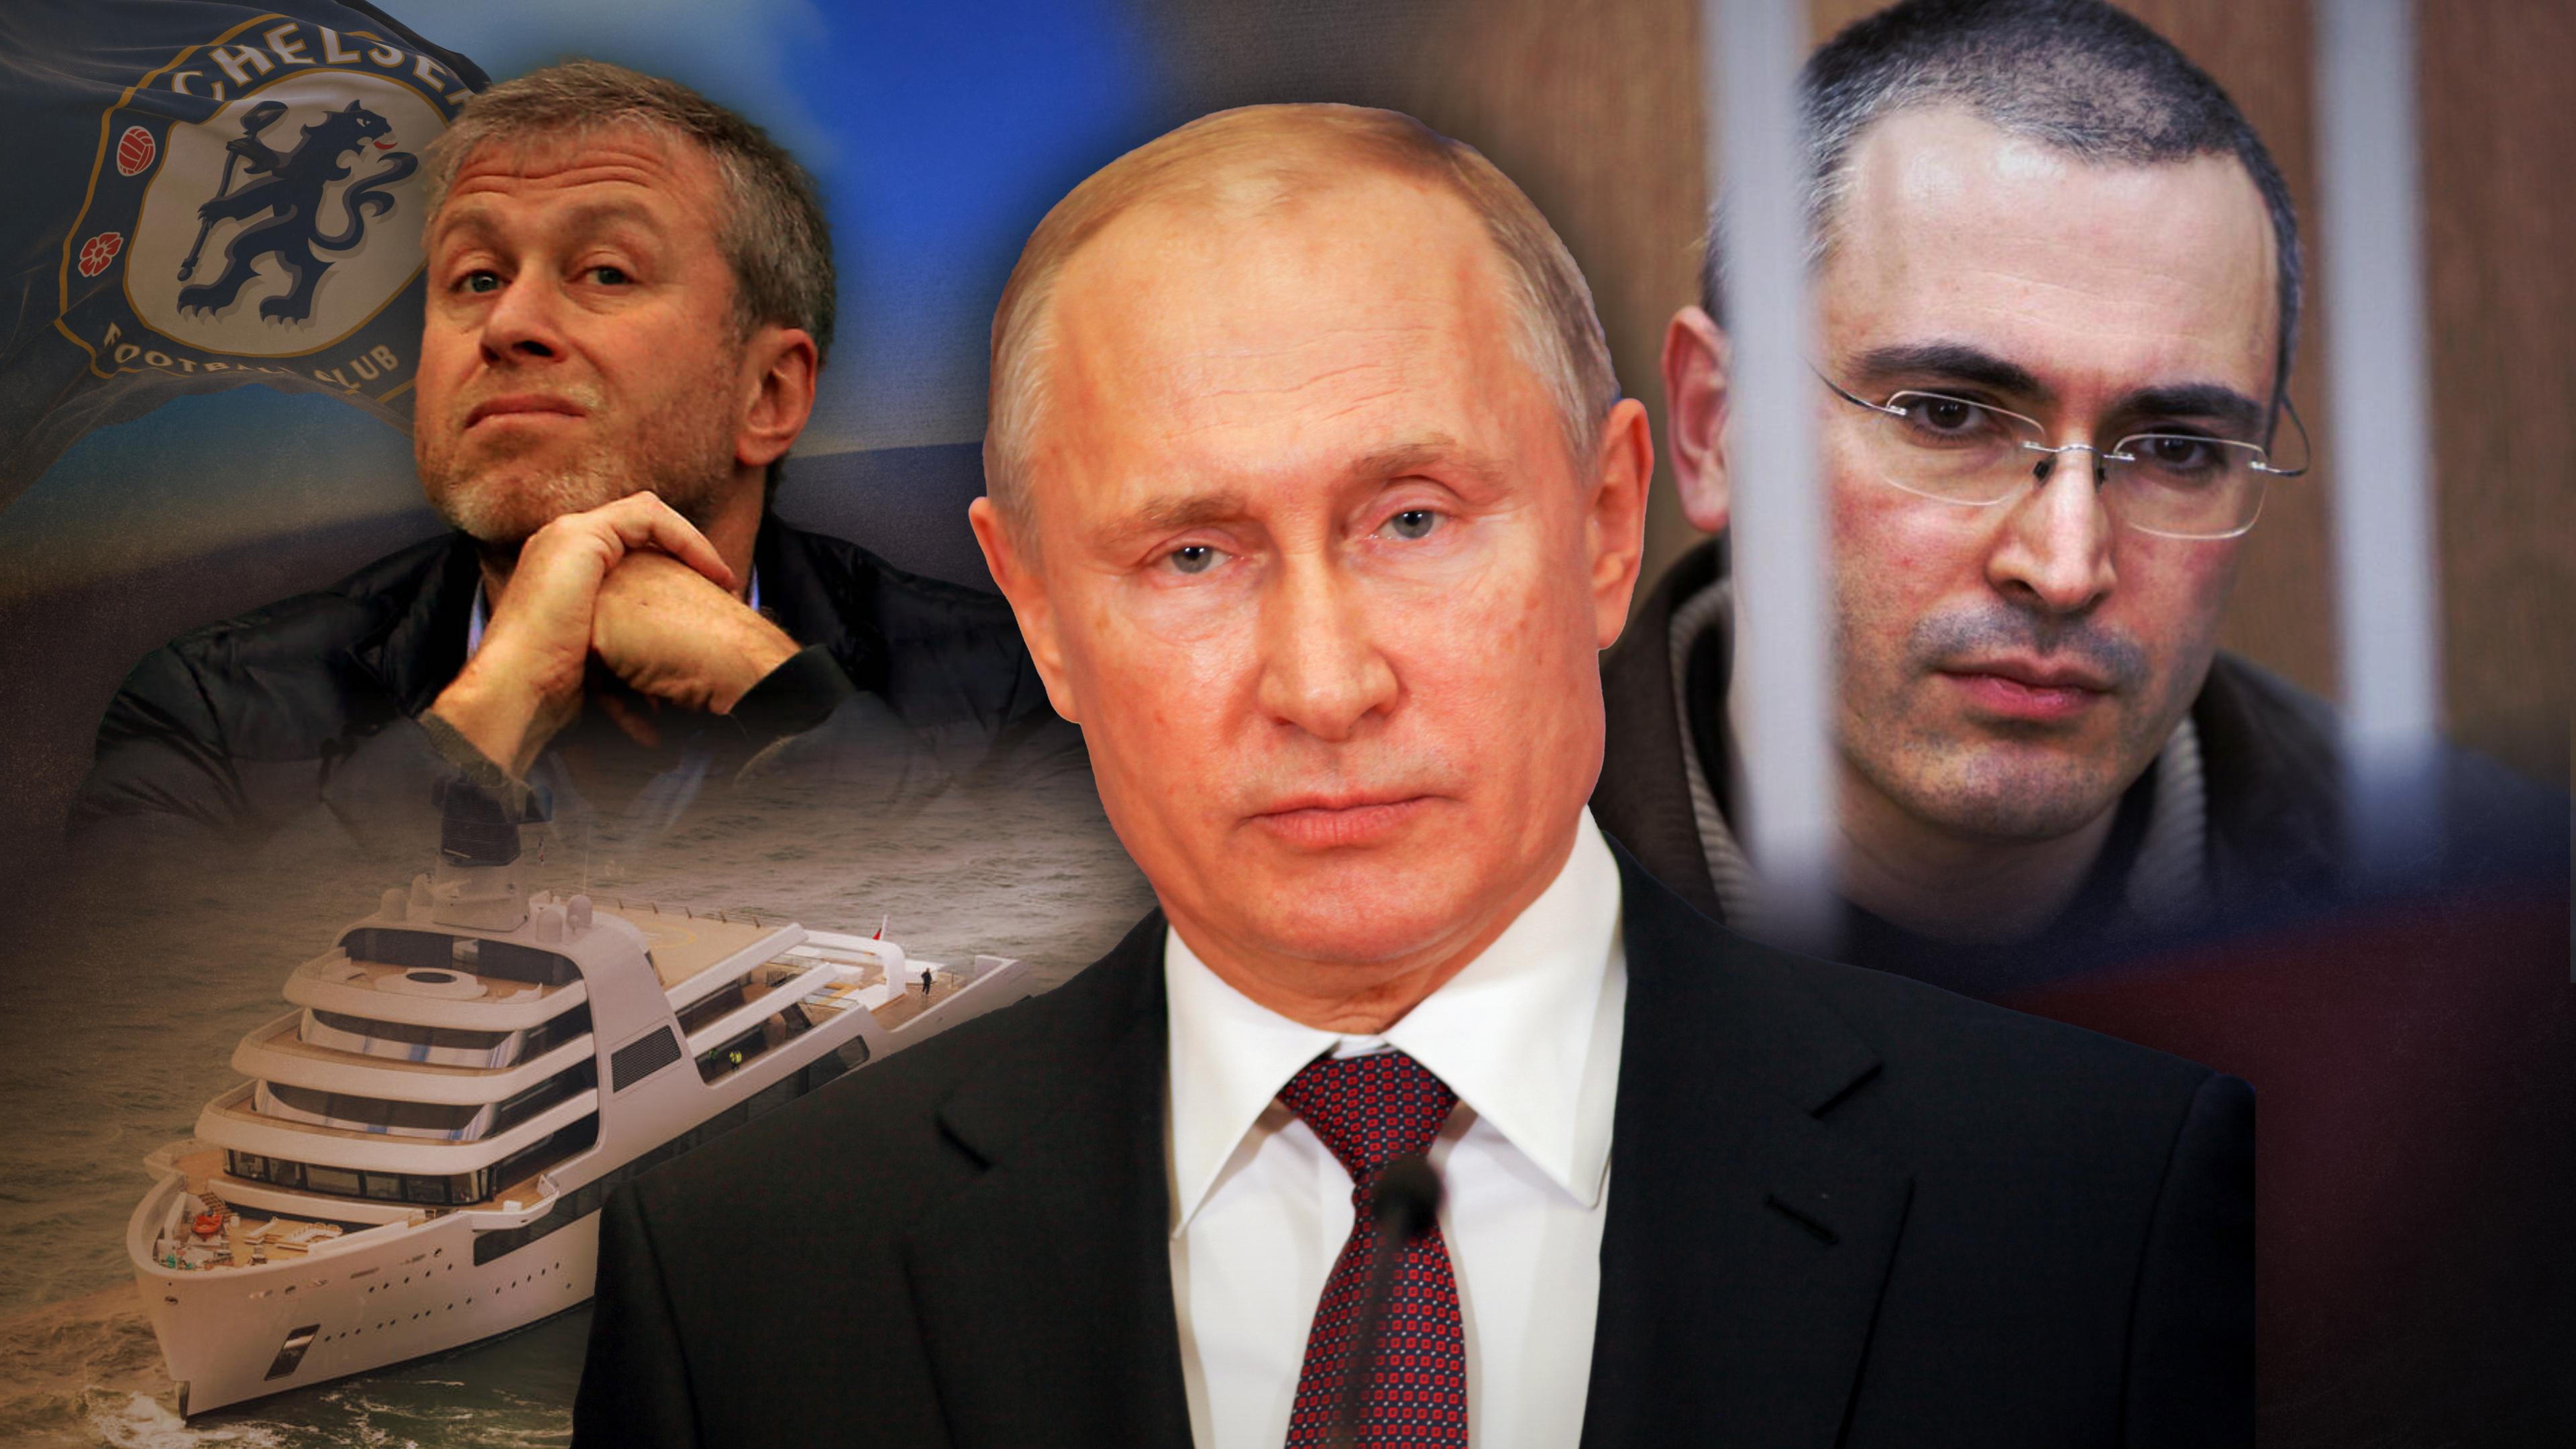 Montage: Zentral im Bild Russlands Präsident Putin. Links und rechts dahinter die russischen Oligarchen Abramowitsch (nachdenklich) und Chodorkowski (hinter Gittern); links im Hintergrund zudem eine Luxusjacht und die Flagge des FC Chelsea.